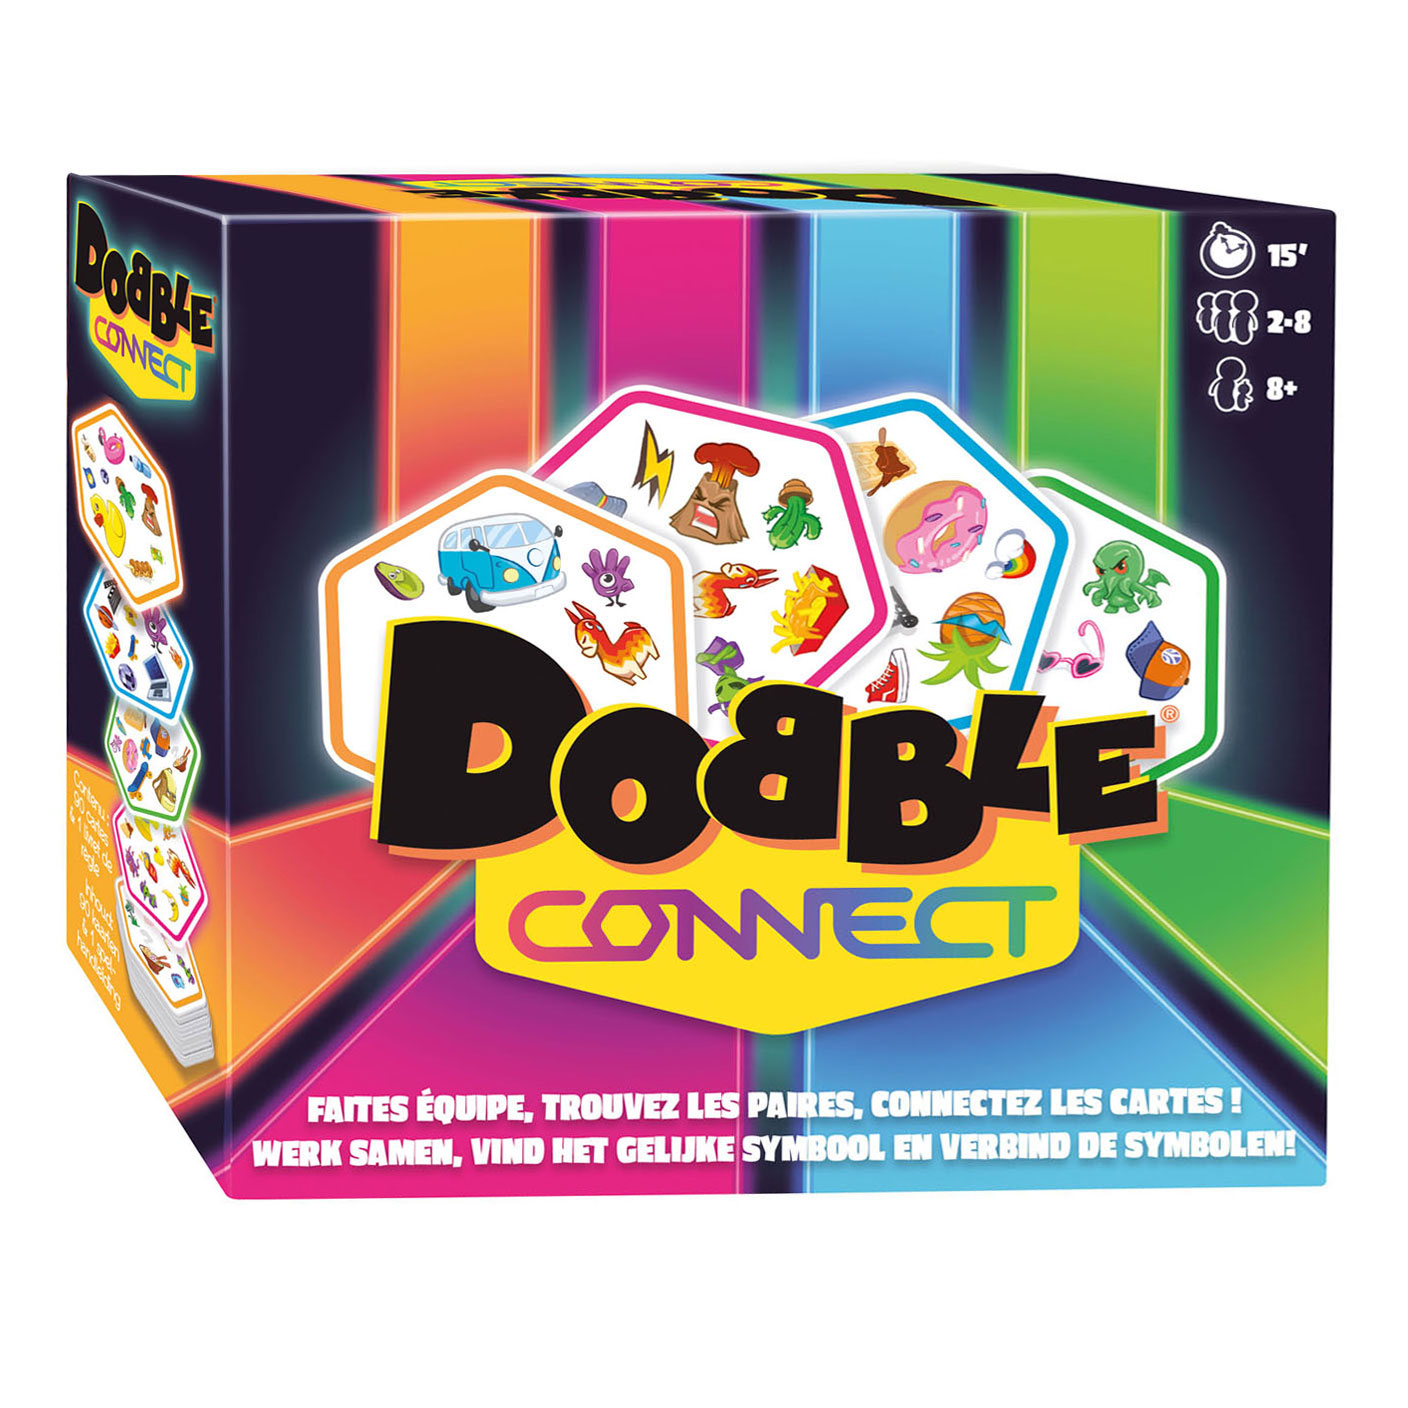 Acheter Jeu de cartes Dobble Connect en ligne?